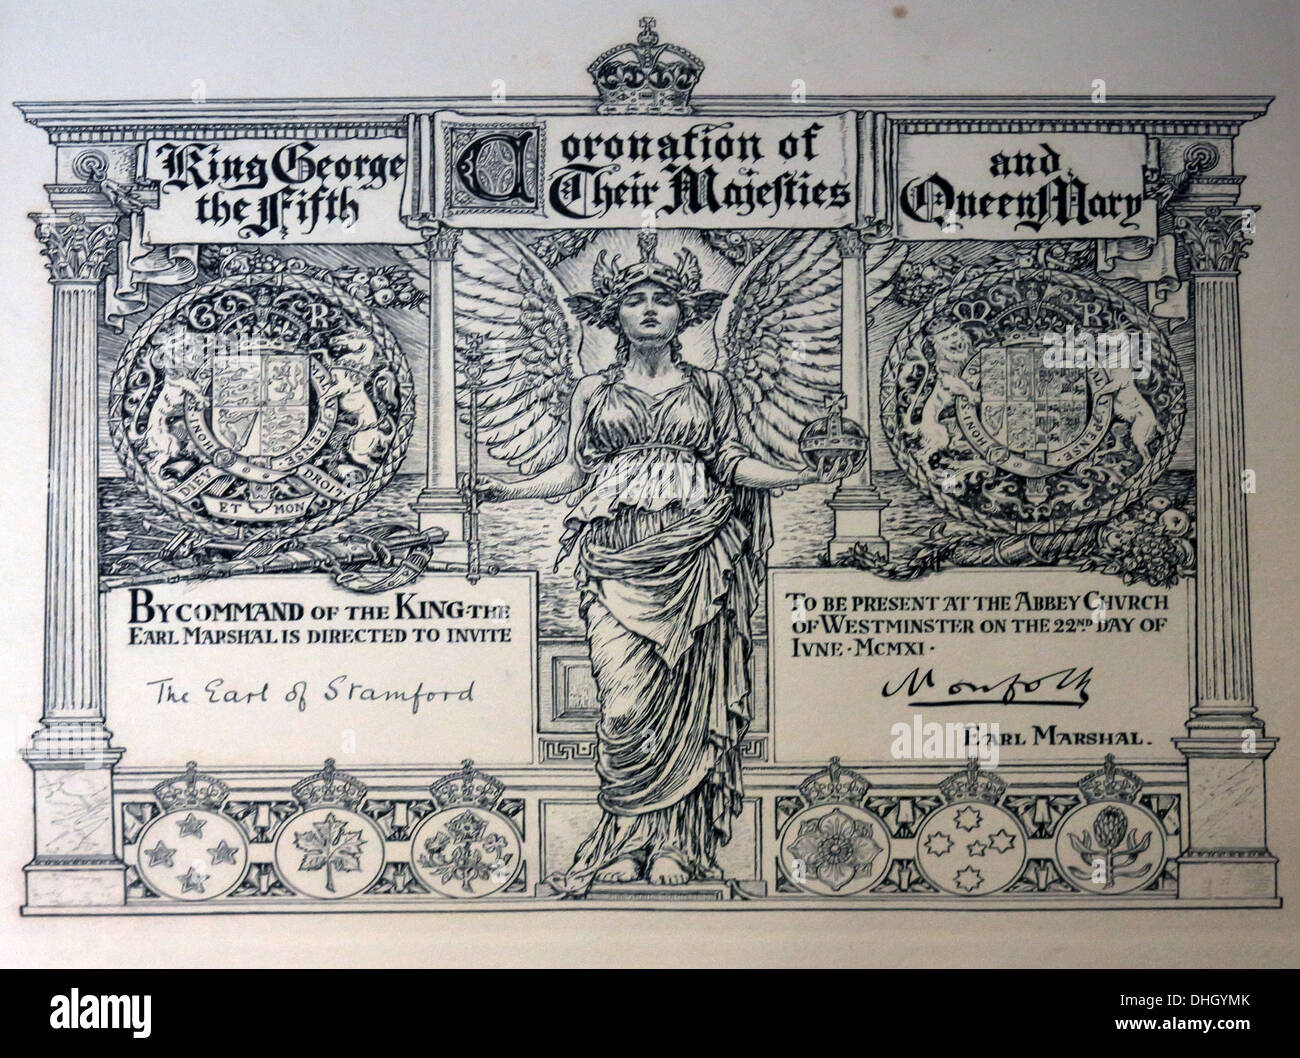 Hot Ticket pour le couronnement 1911 du roi George V, la reine Mary, admettez un des dowager de Stamford, de Dunham Massey NT Altrincham Cheshire, Angleterre Banque D'Images